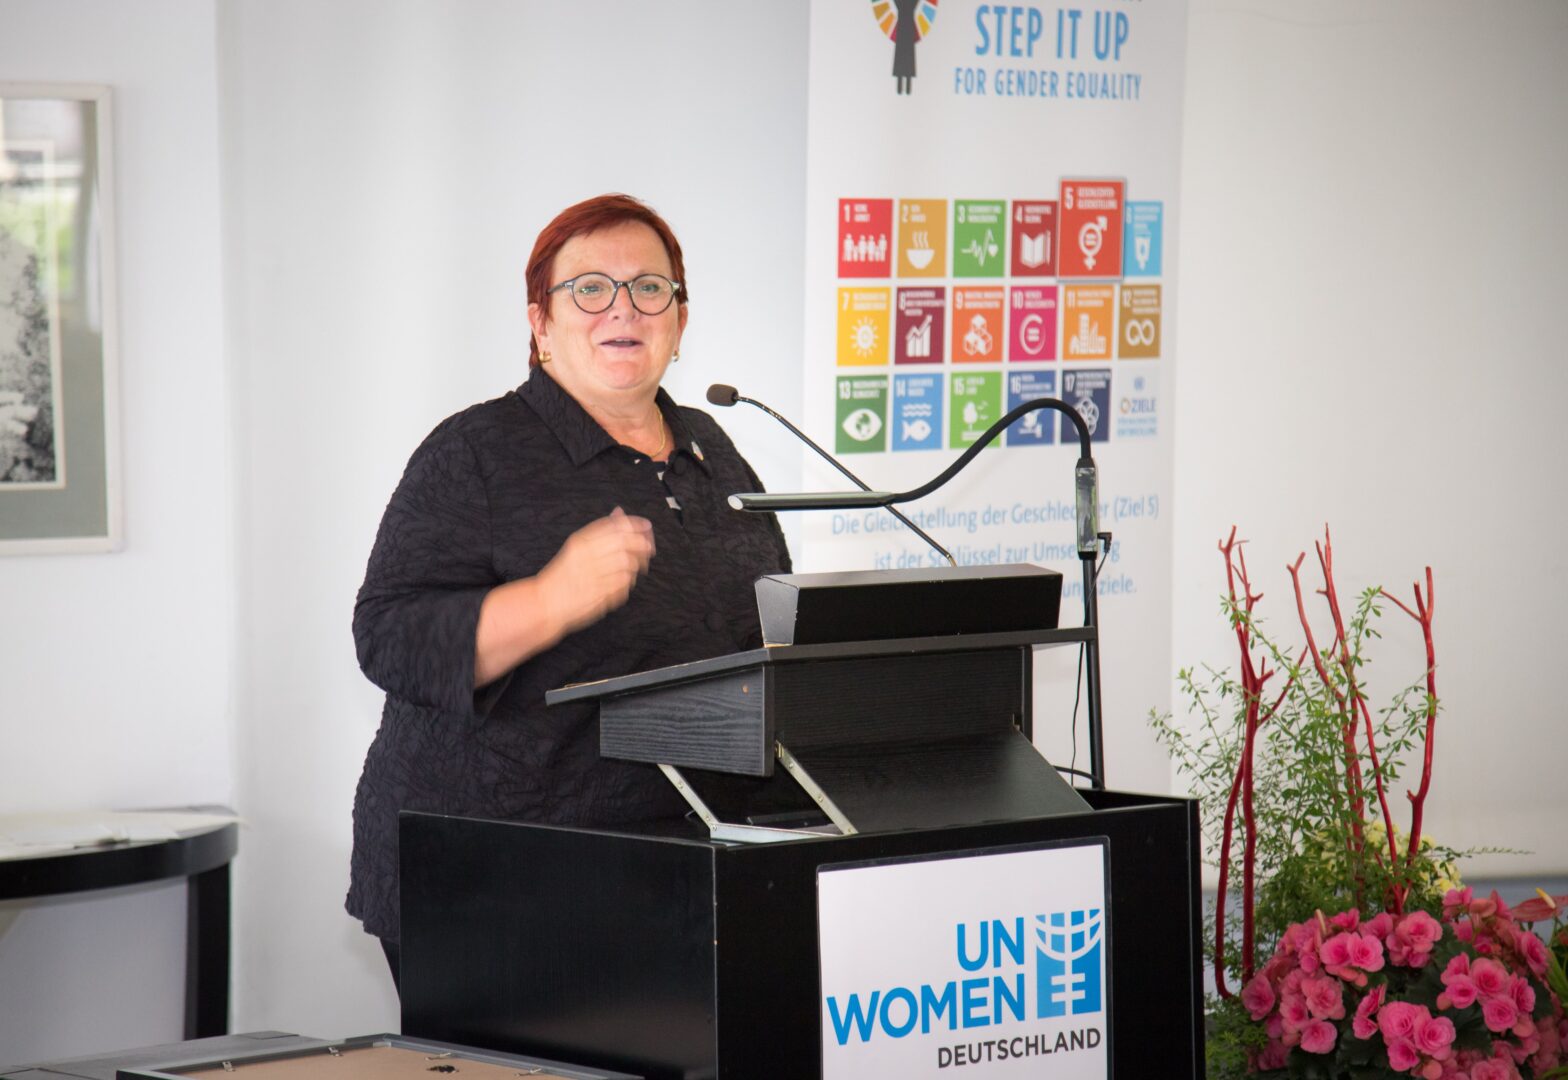 Die UN Women Deutschland Vorsitzende Elke Ferner hält eine Rede. Credit: UN Women Deutschland/Ortrud Ladleif